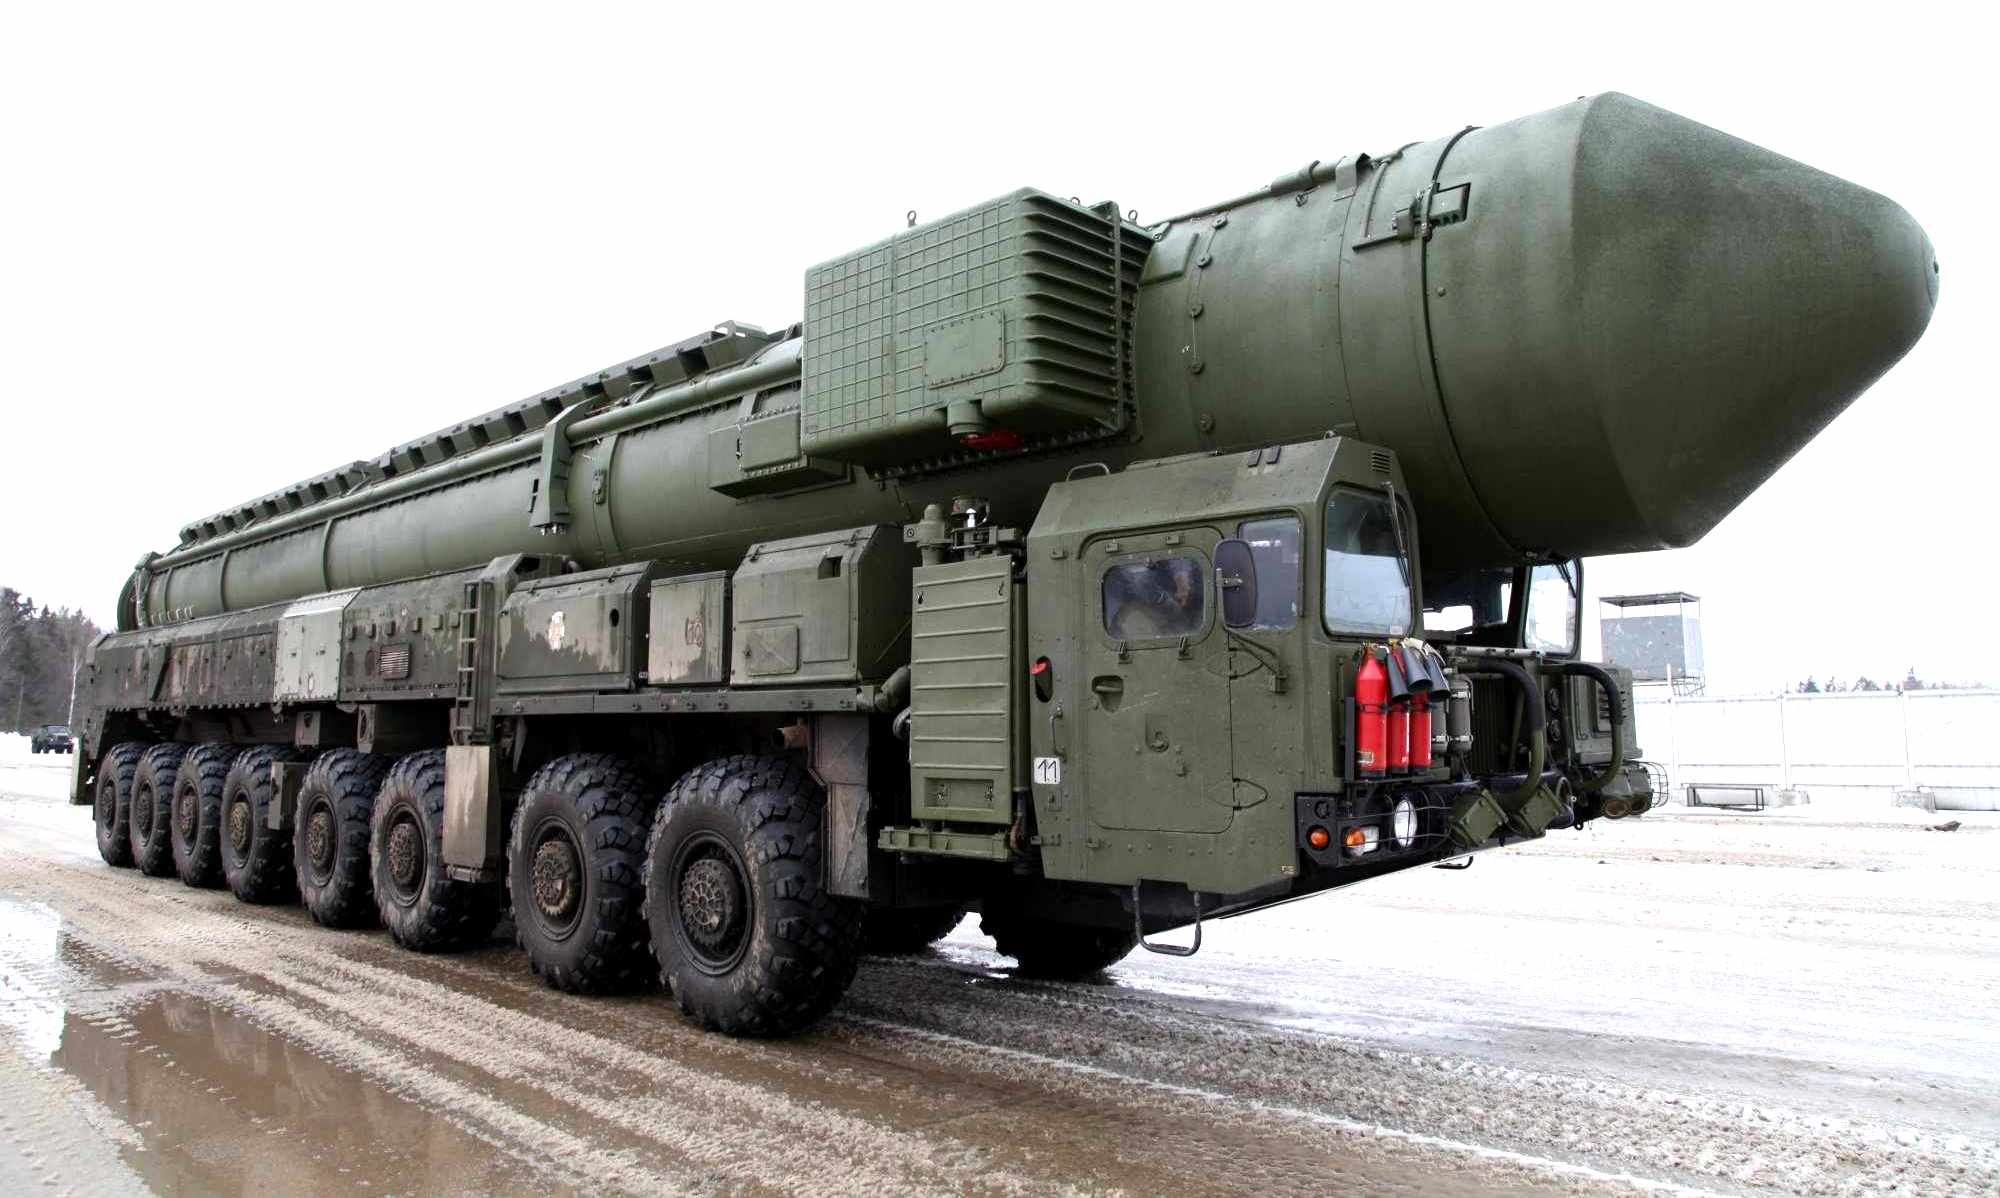 东风-41即将服役?盘点中美俄最强陆基洲际导弹